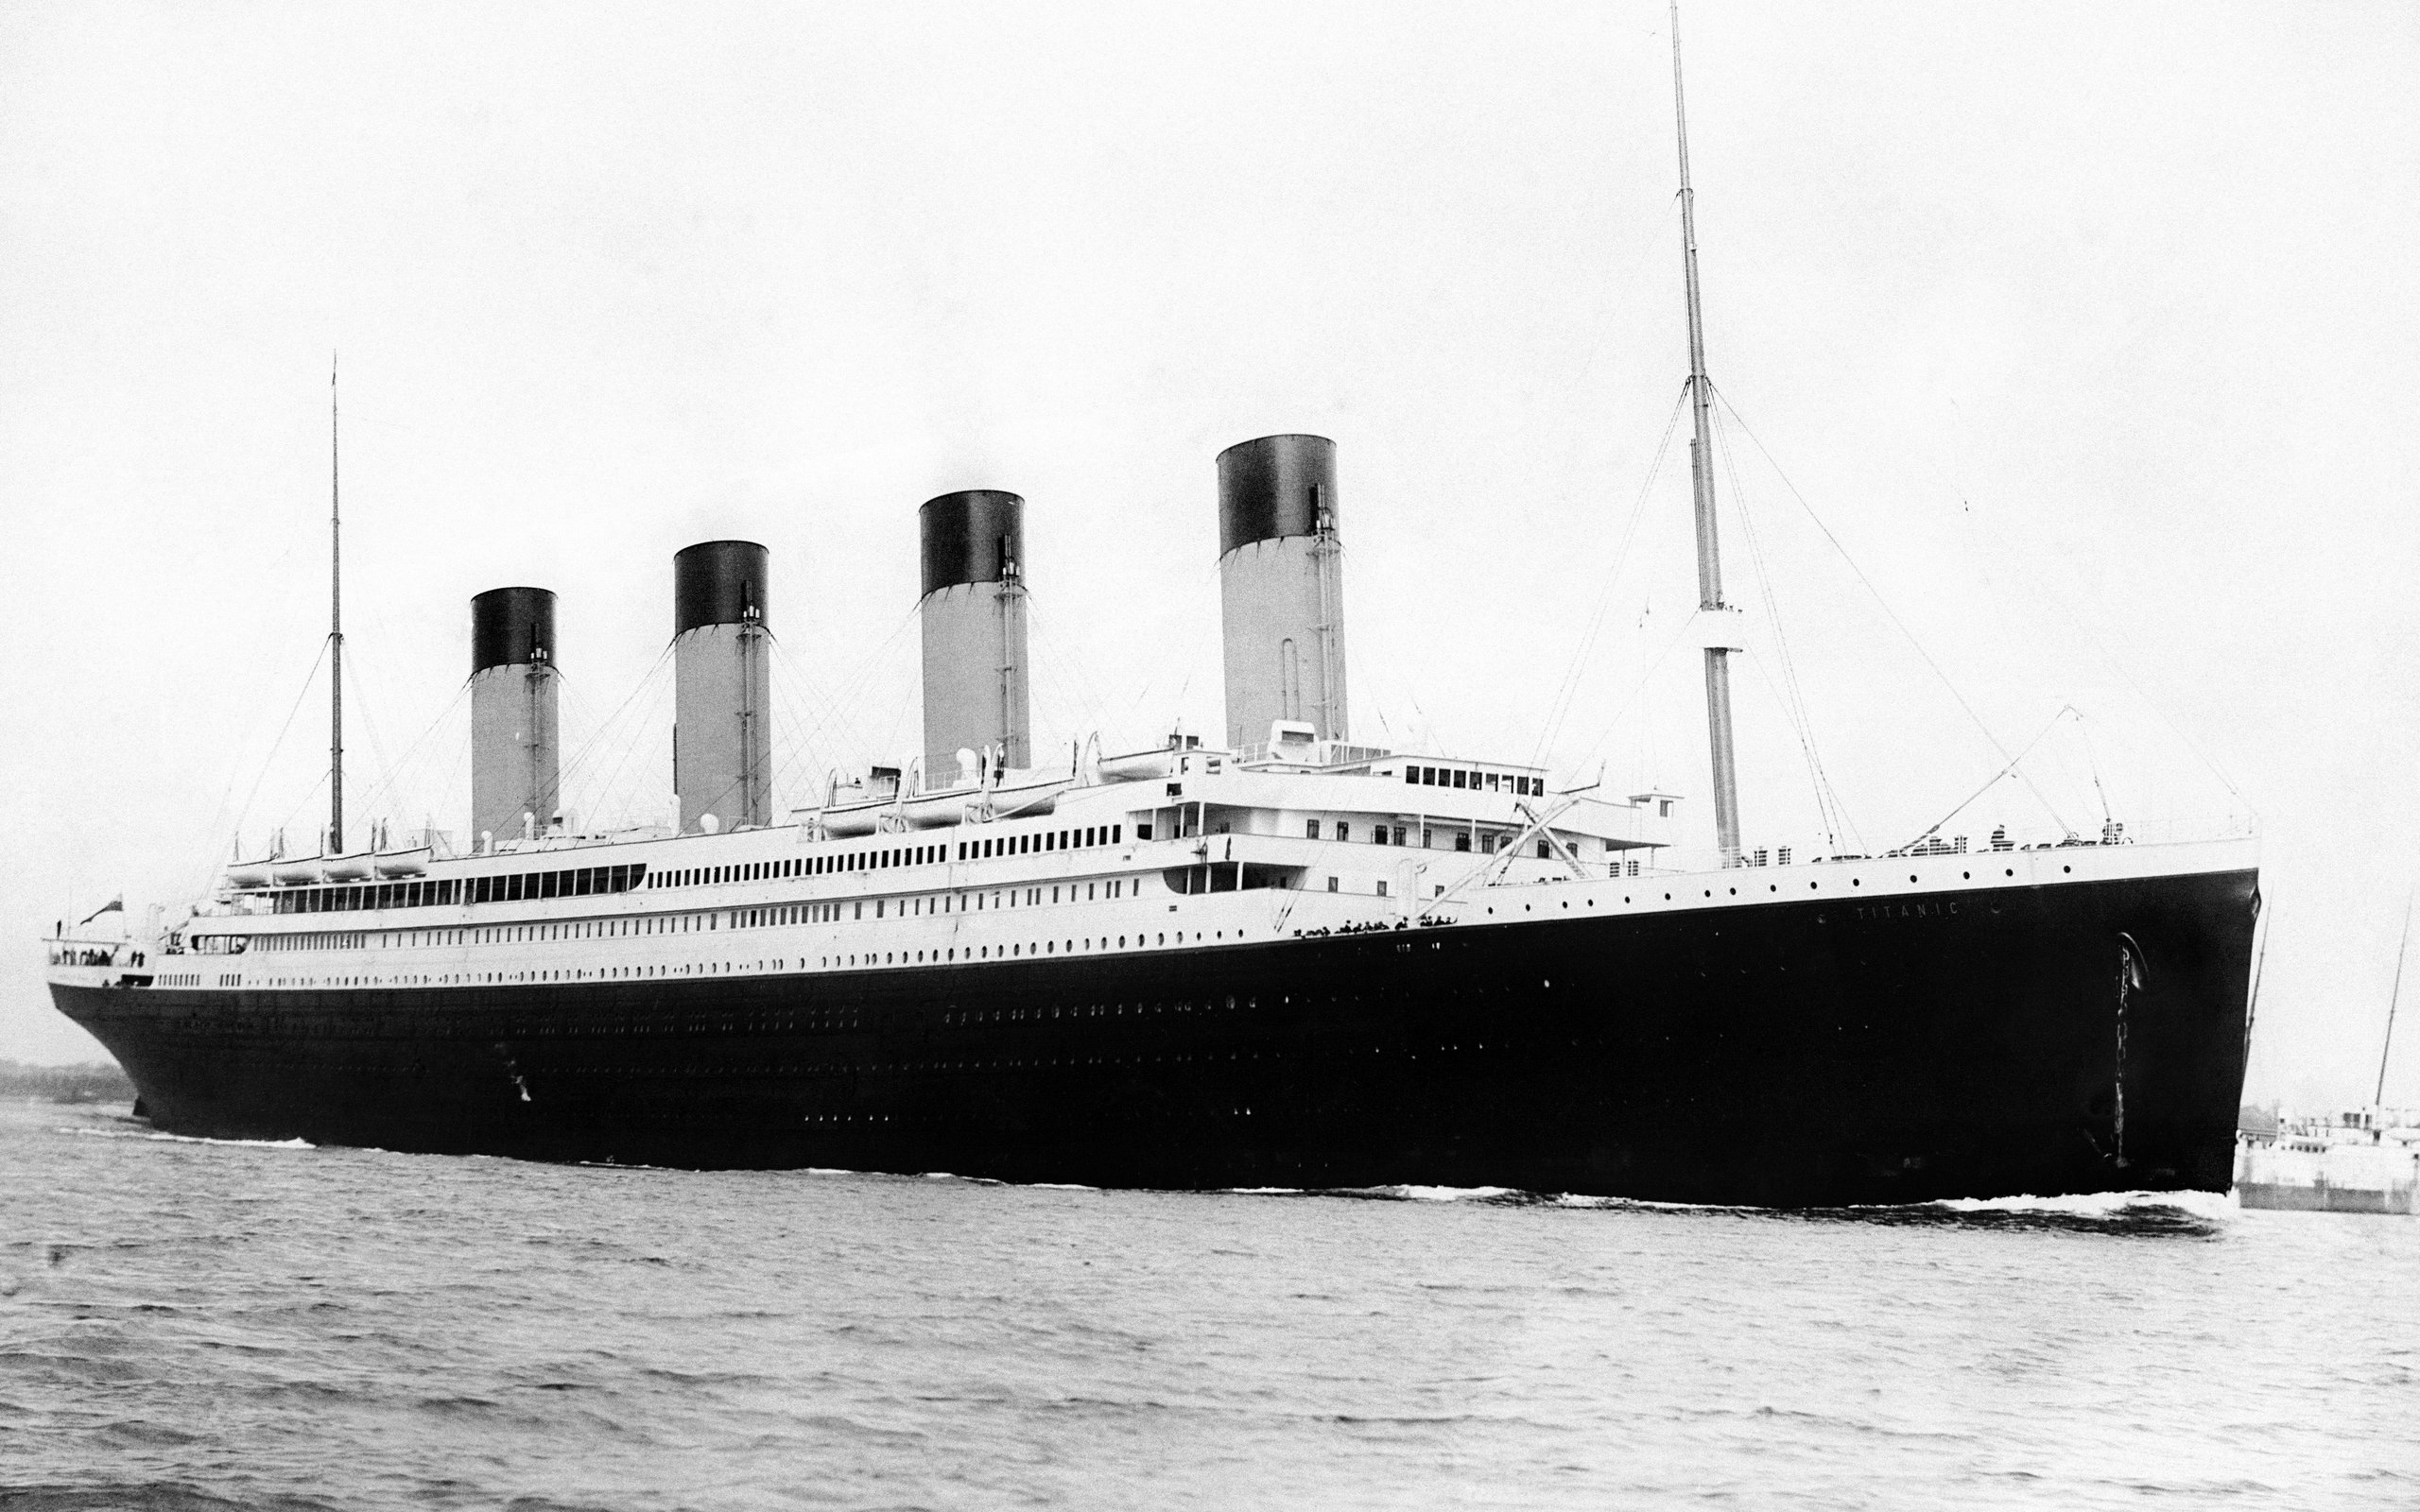 Wallpaper, tapeta Titanic | 2560x1600 pozad na pozad potae, tabletu, mobilu 